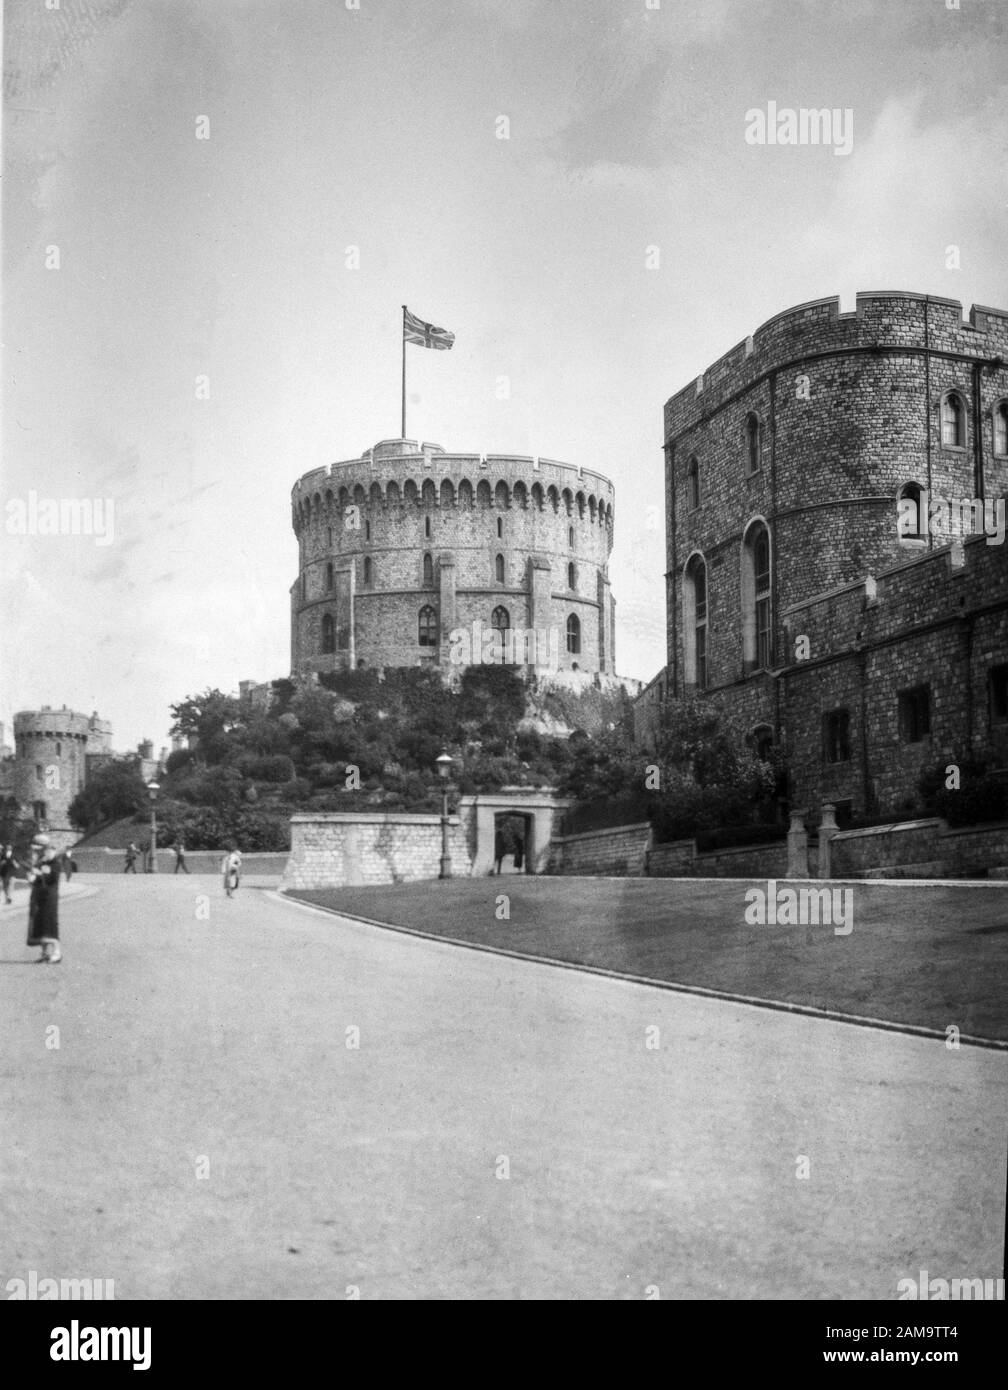 Photo d'archive du château de Windsor circe 1925. Numérisé à partir du négatif d'origine Banque D'Images